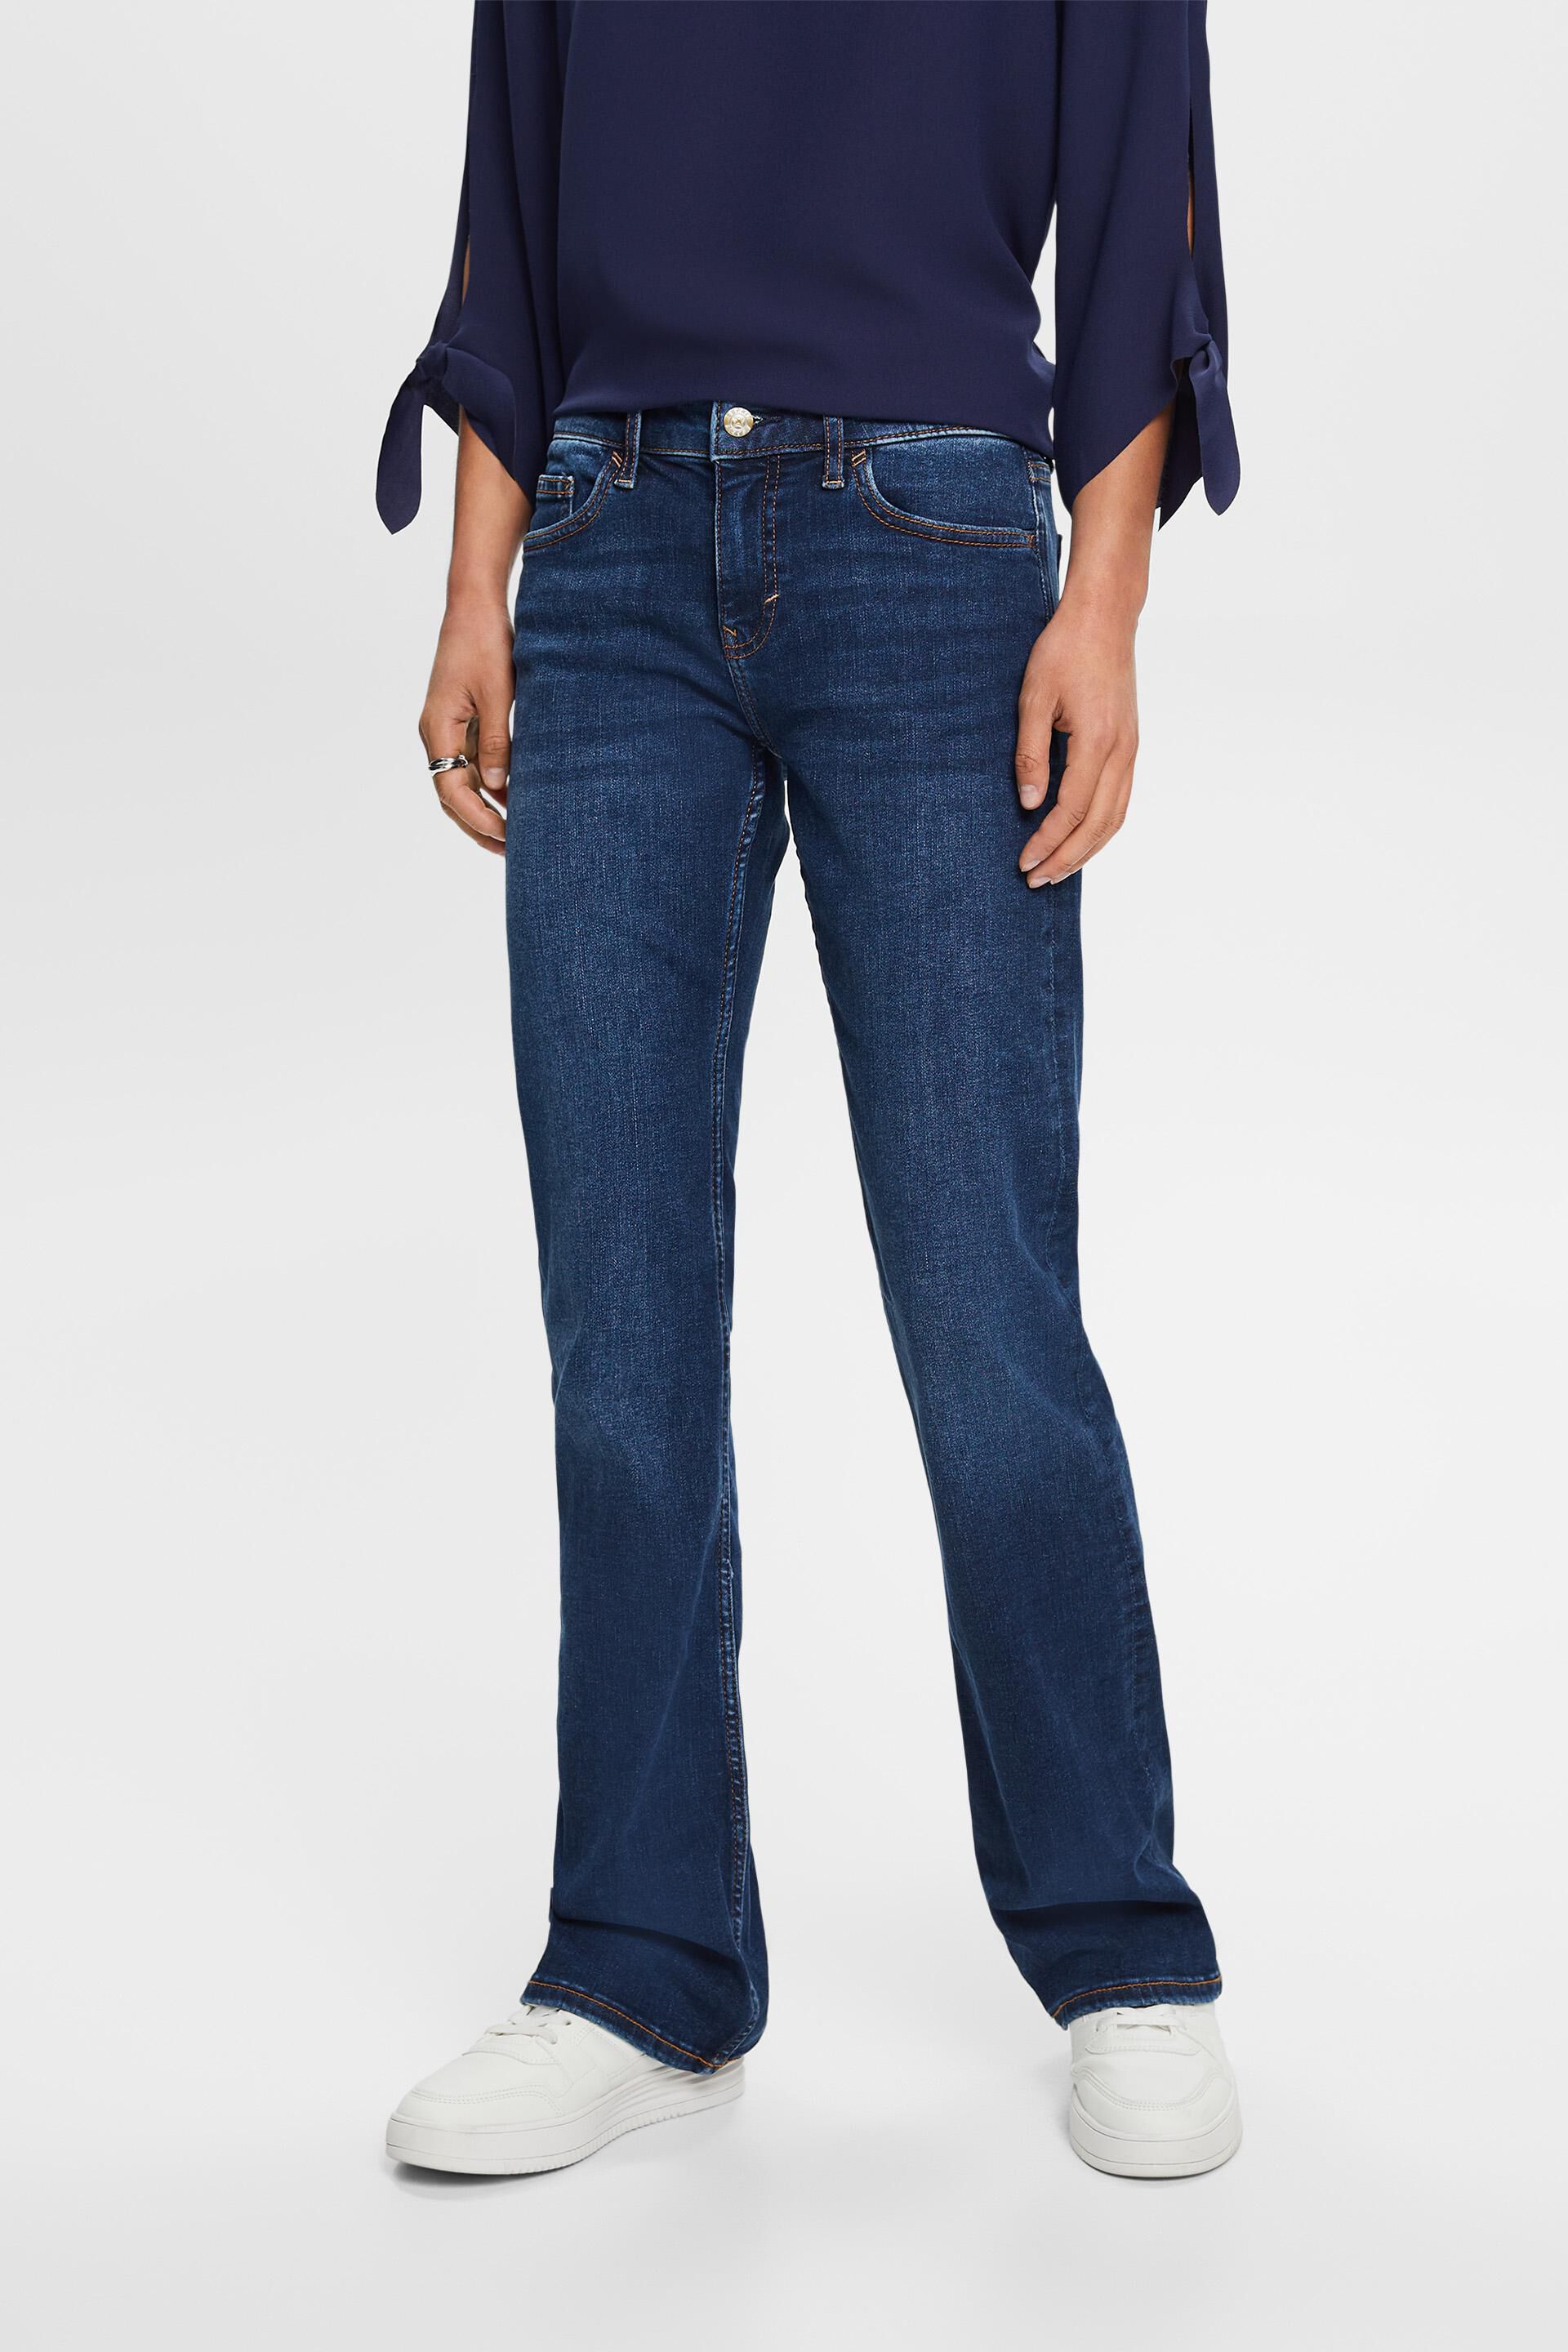 Esprit Mid-rise bootcut jeans